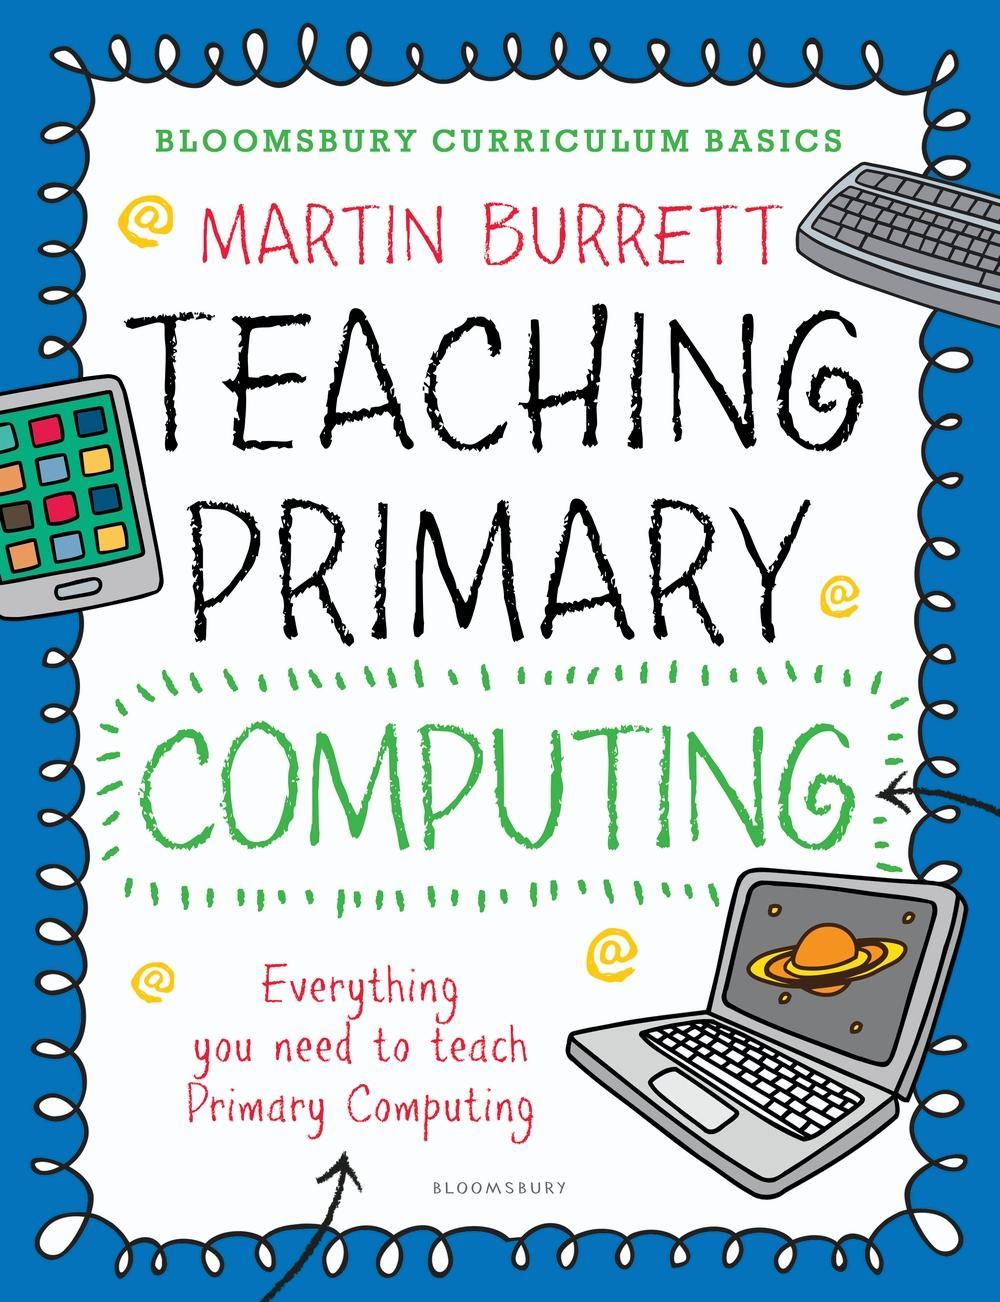 Bloomsbury Curriculum Basics: Teaching Primary Computing - Martin Burrett